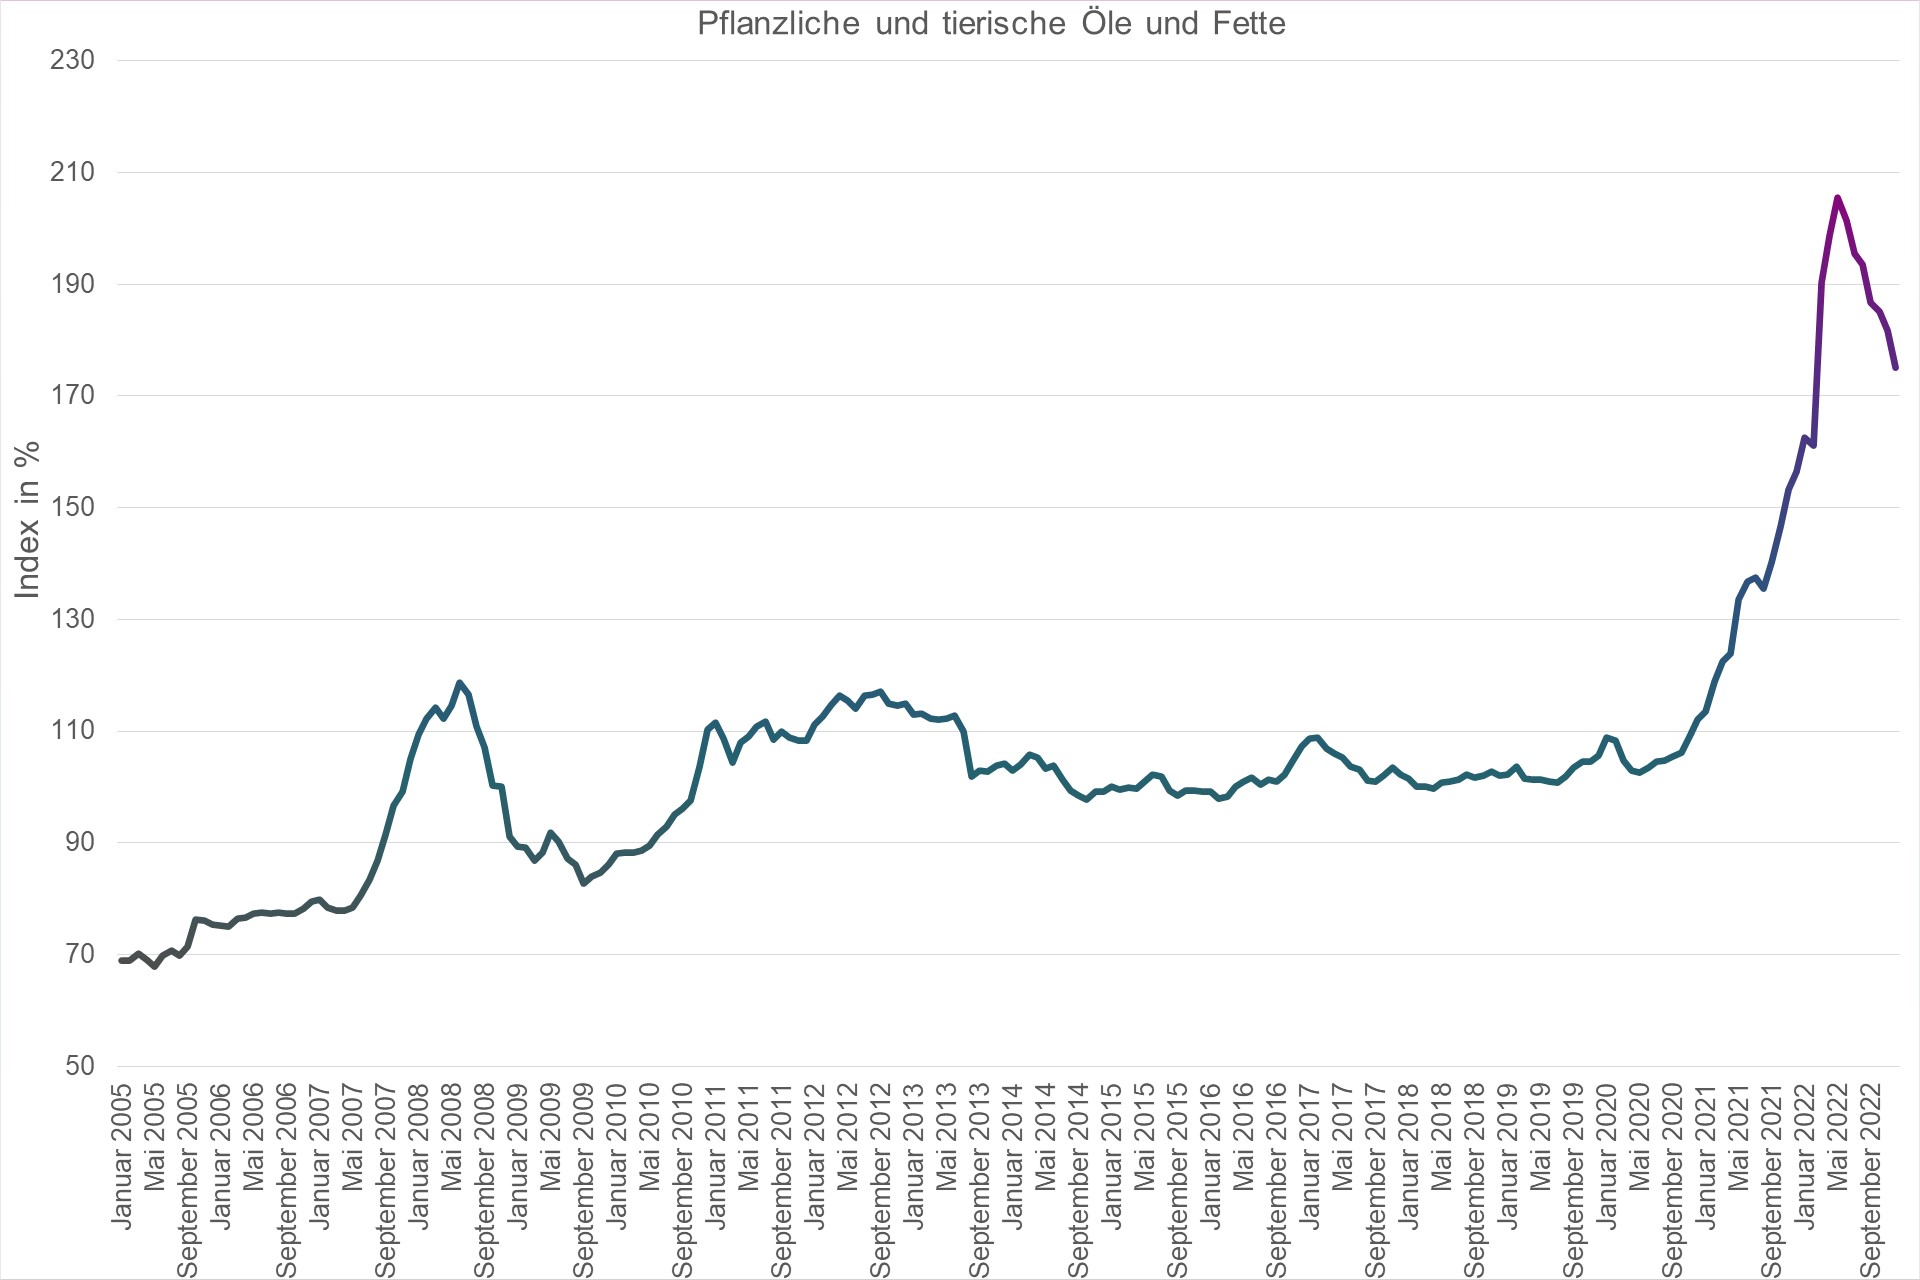 Grafik Preisindex Pflanzliche und tierische Öle und Fette